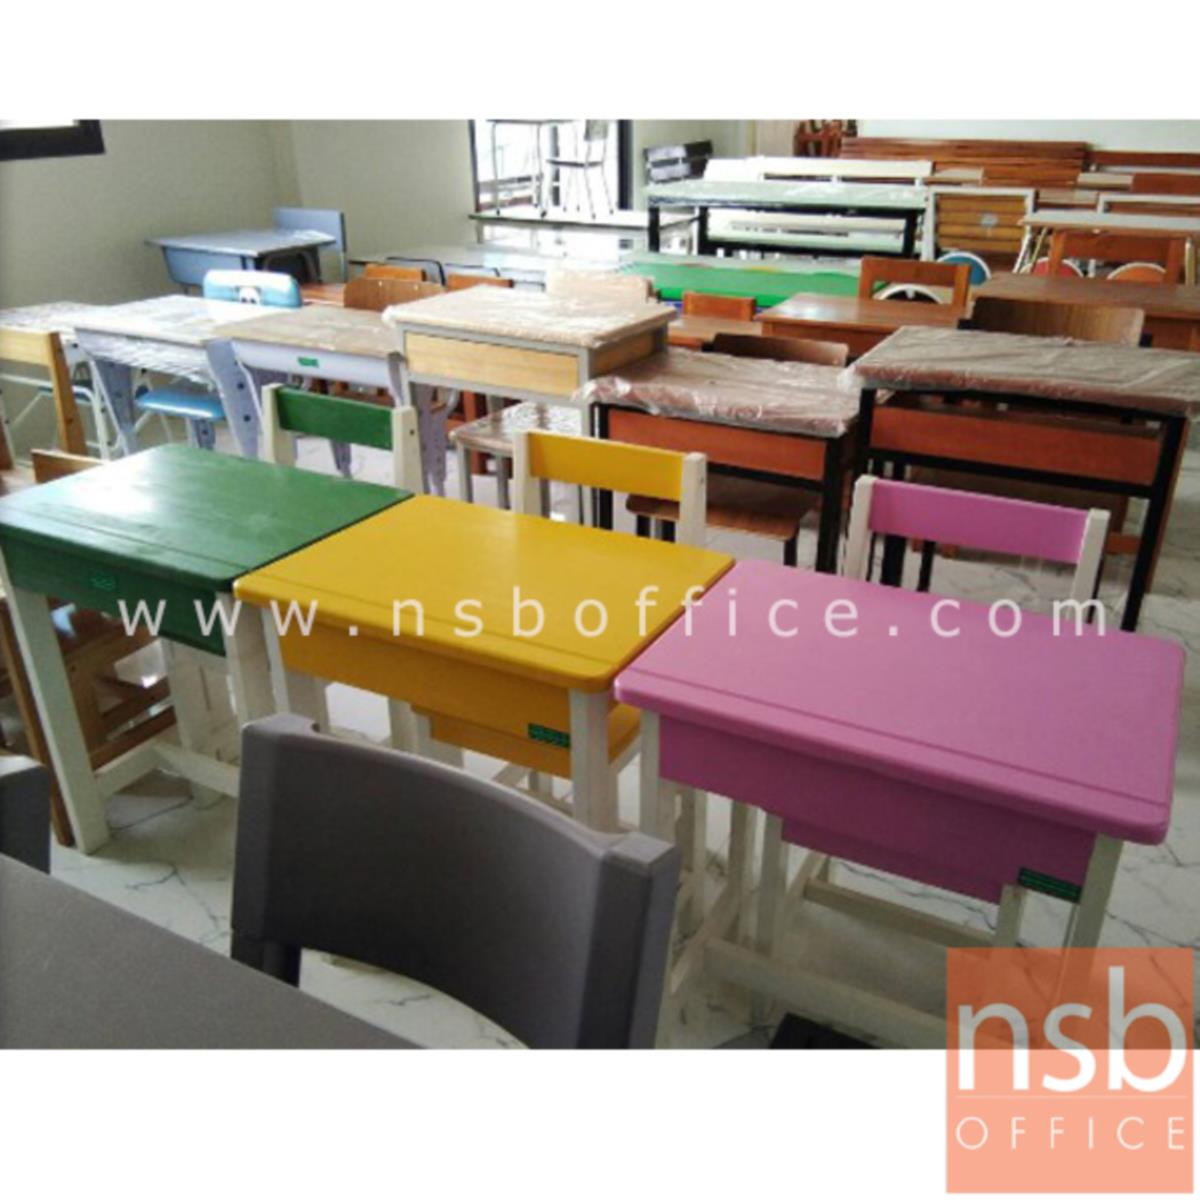 ชุดโต๊ะและเก้าอี้นักเรียนไม้ยางพาราสีสัน รุ่น ARKANSAS (อาร์แคนซอส์)  ระดับประถมศึกษา